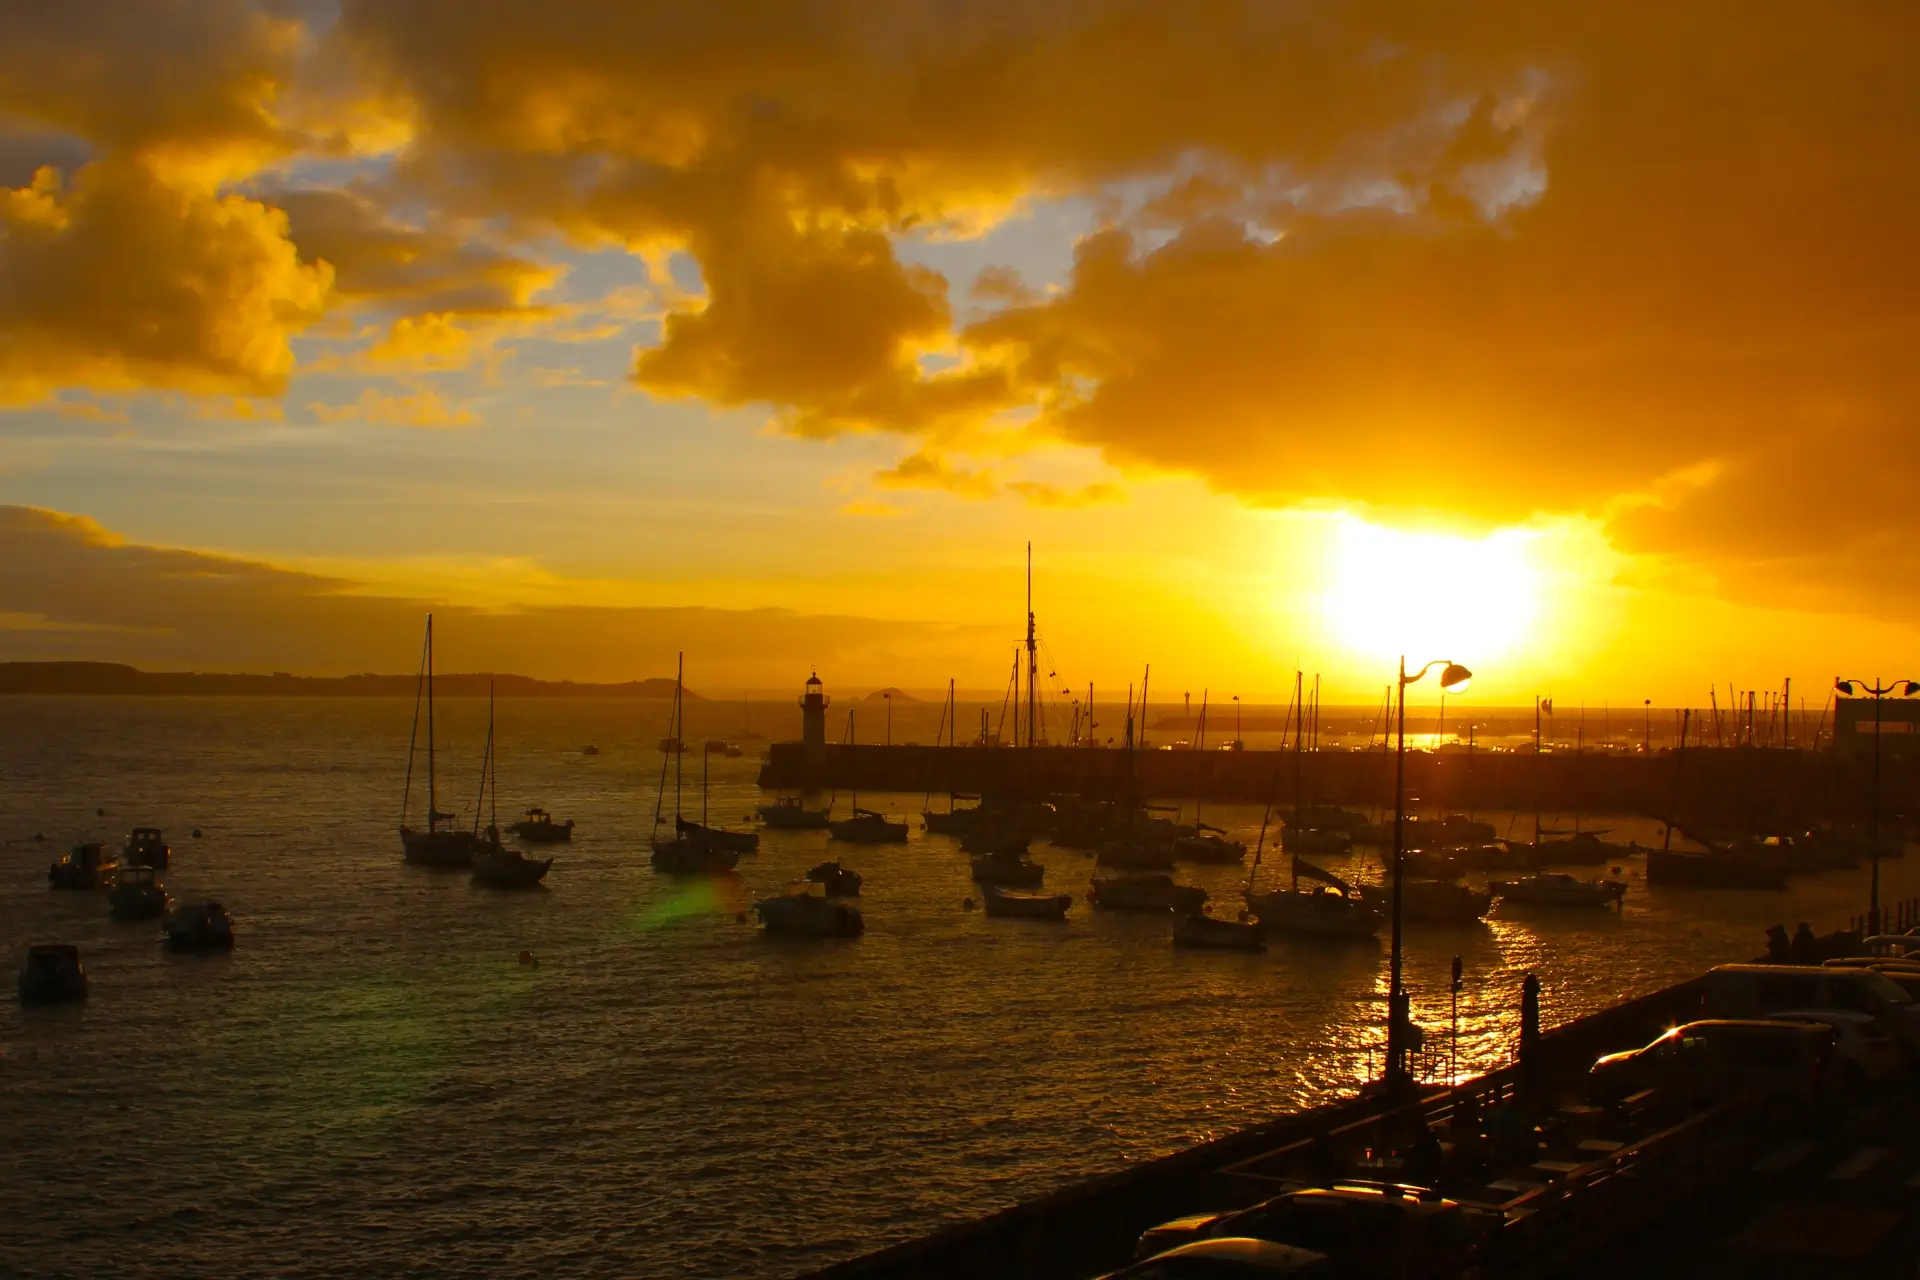 Sonnenuntergang am Hafen als Sinnbild für den Seelenplan